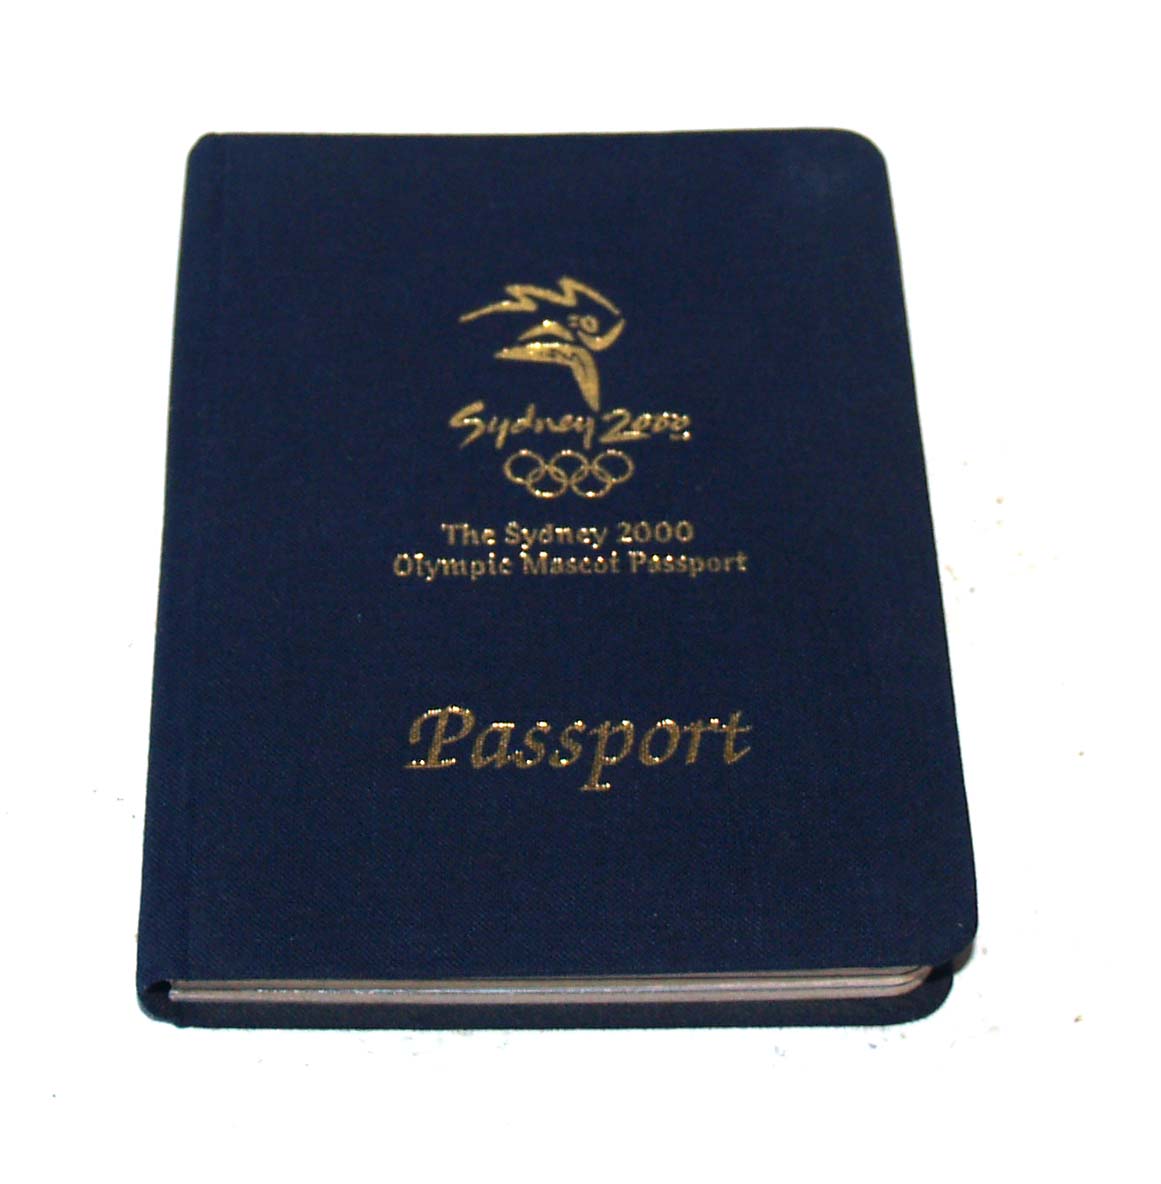 2000年悉尼奥运会护照 吉祥物纪念币 悉尼发行